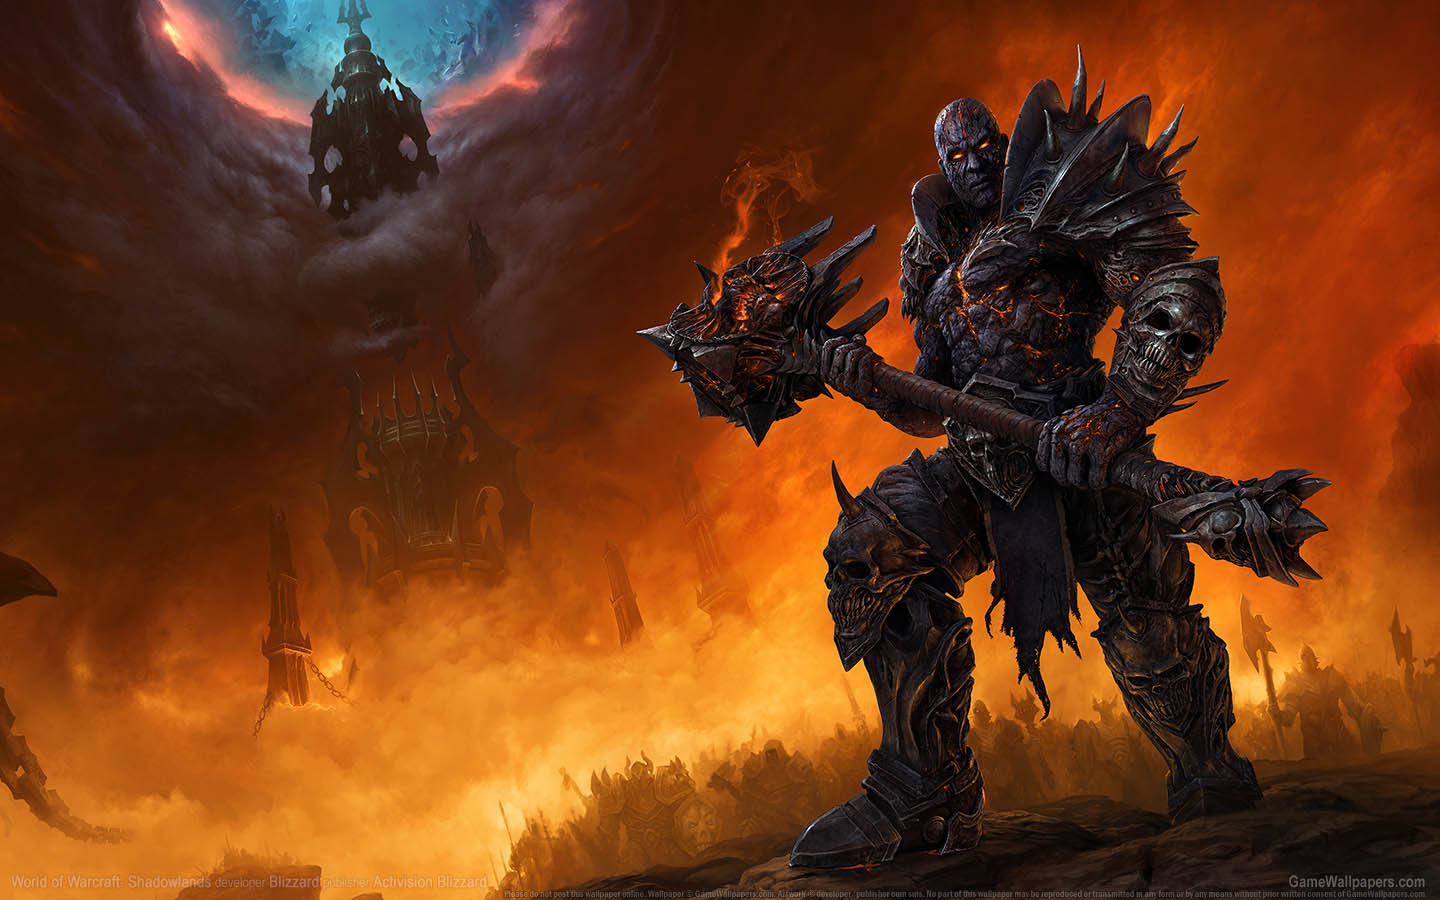 World of Warcraft: Shadowlands fond d'cran 01 1440x900